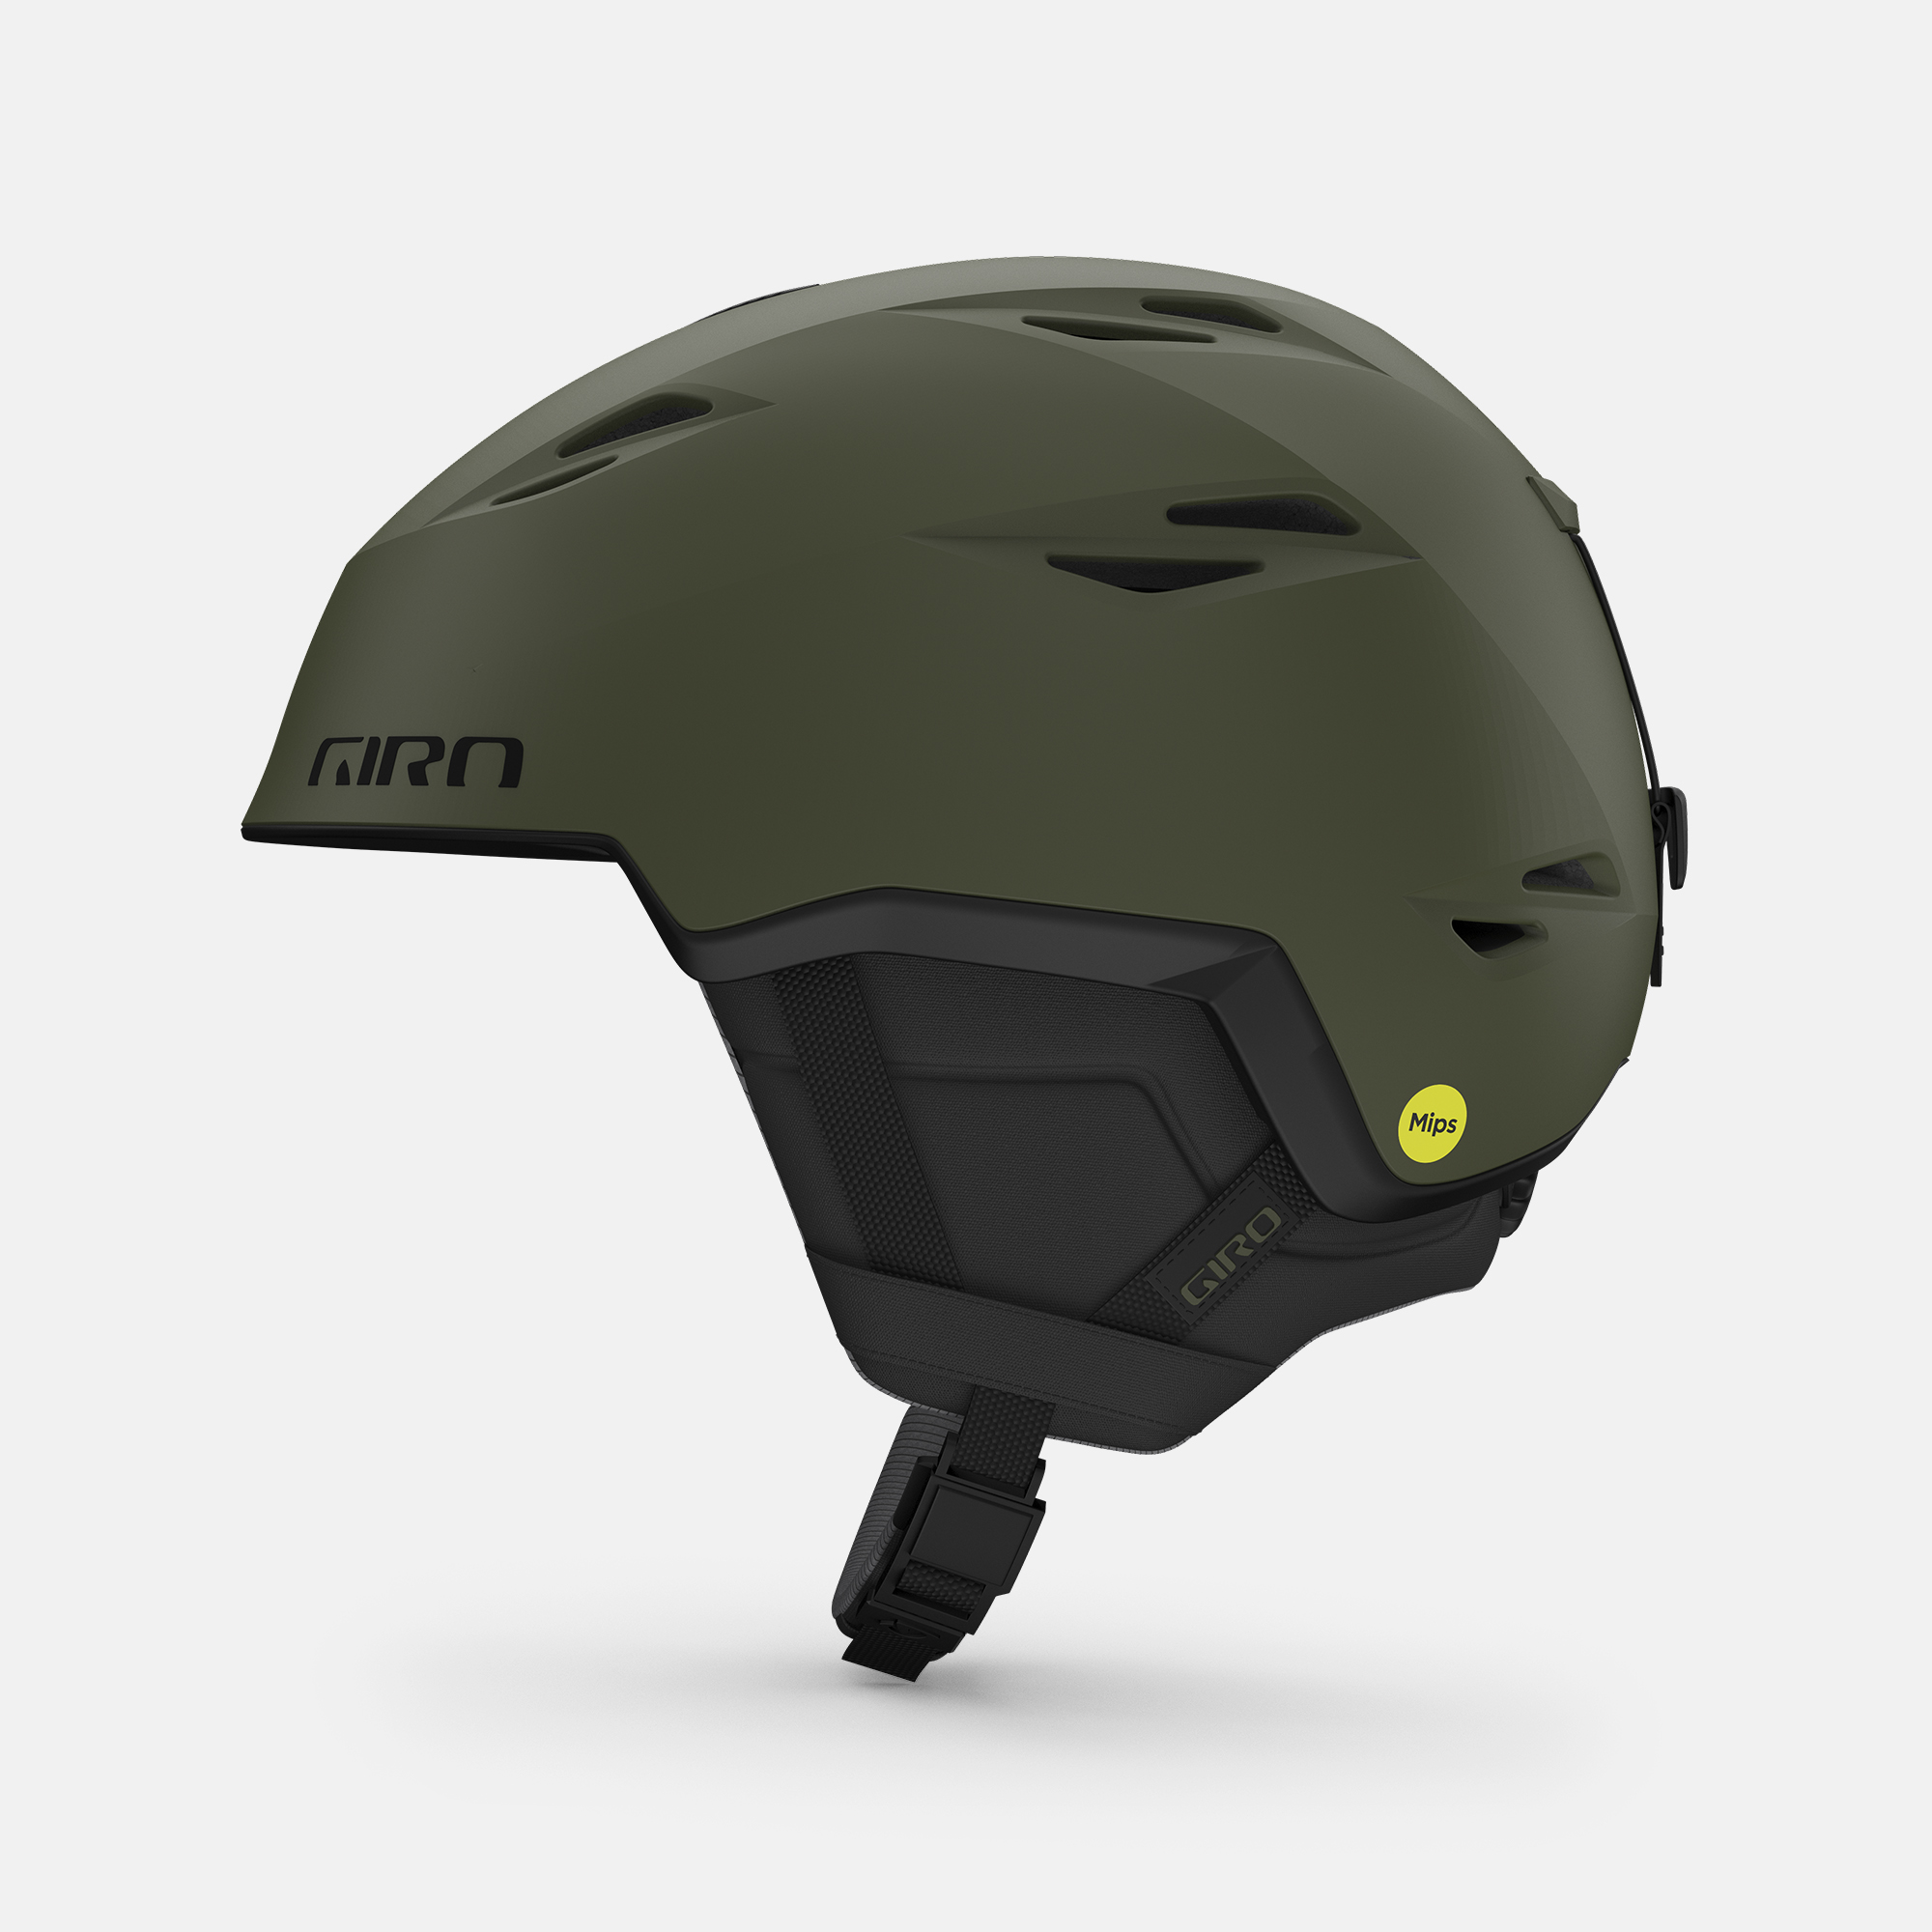 Grid Spherical Helmet Giro